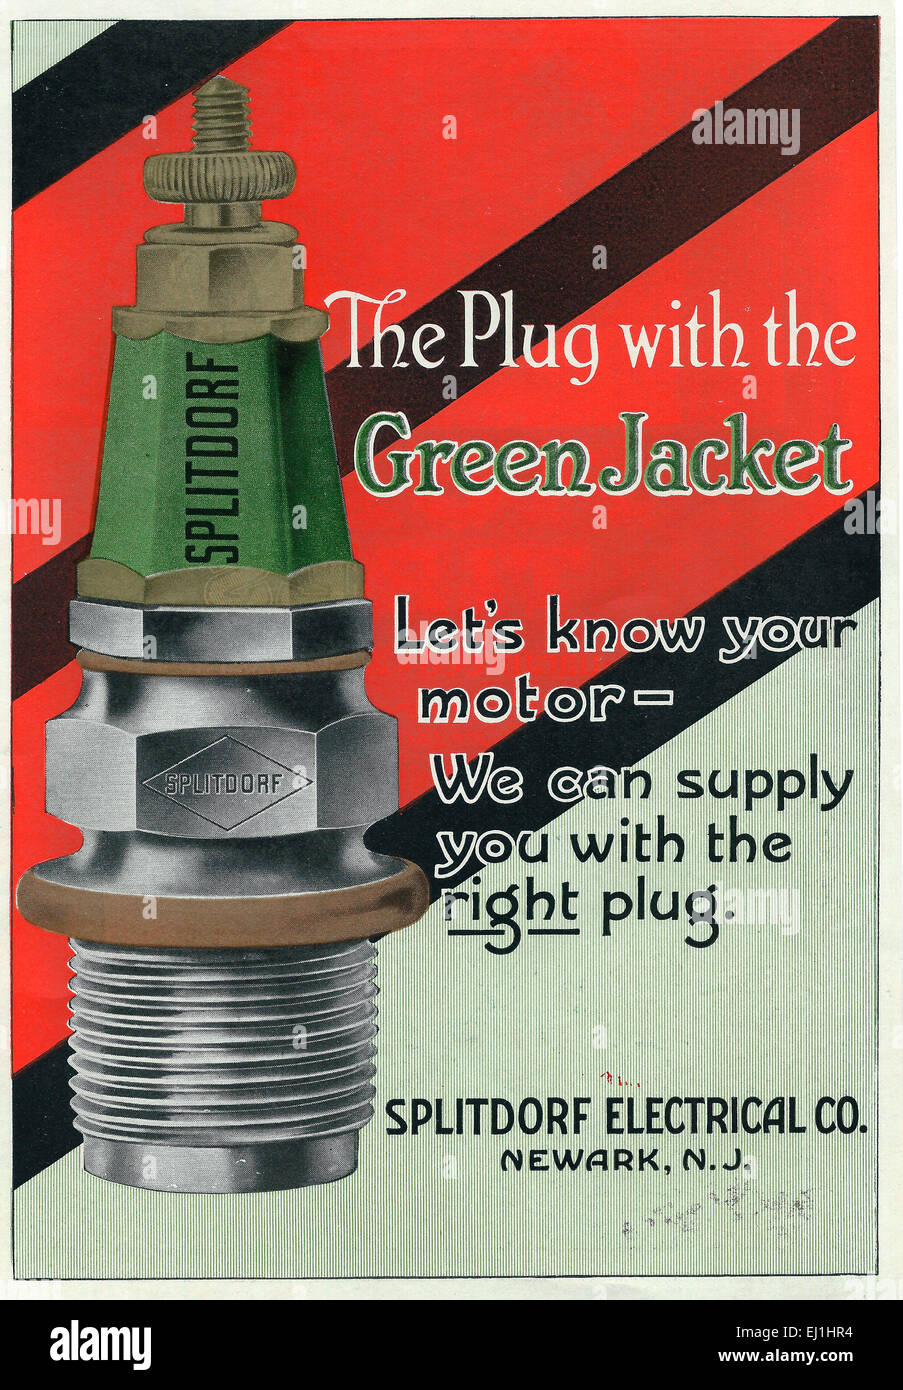 Splitdorf - La fiche avec la veste verte - publicité 1916 Banque D'Images